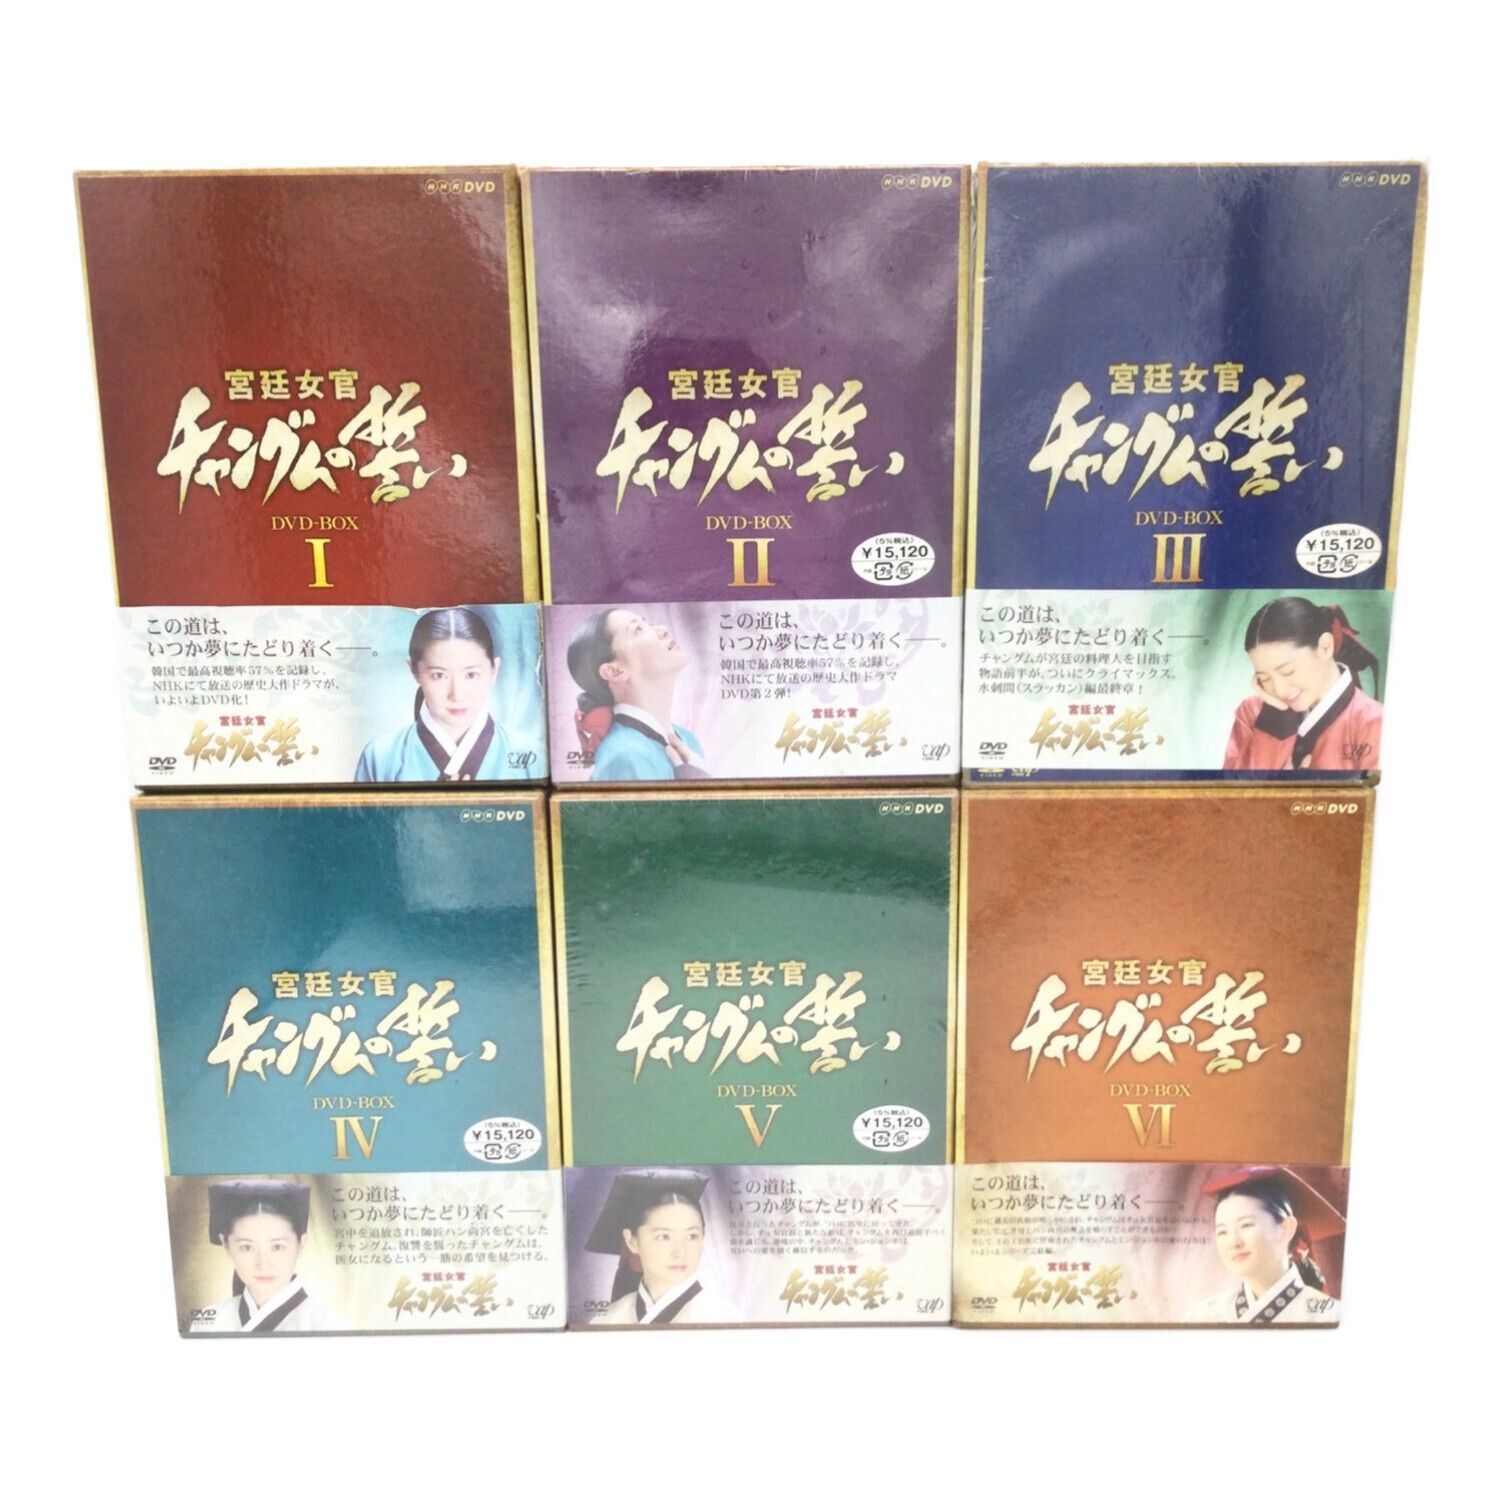 コンパクトセレクション 宮廷女官チャングムの誓い DVD-BOX - 外国映画